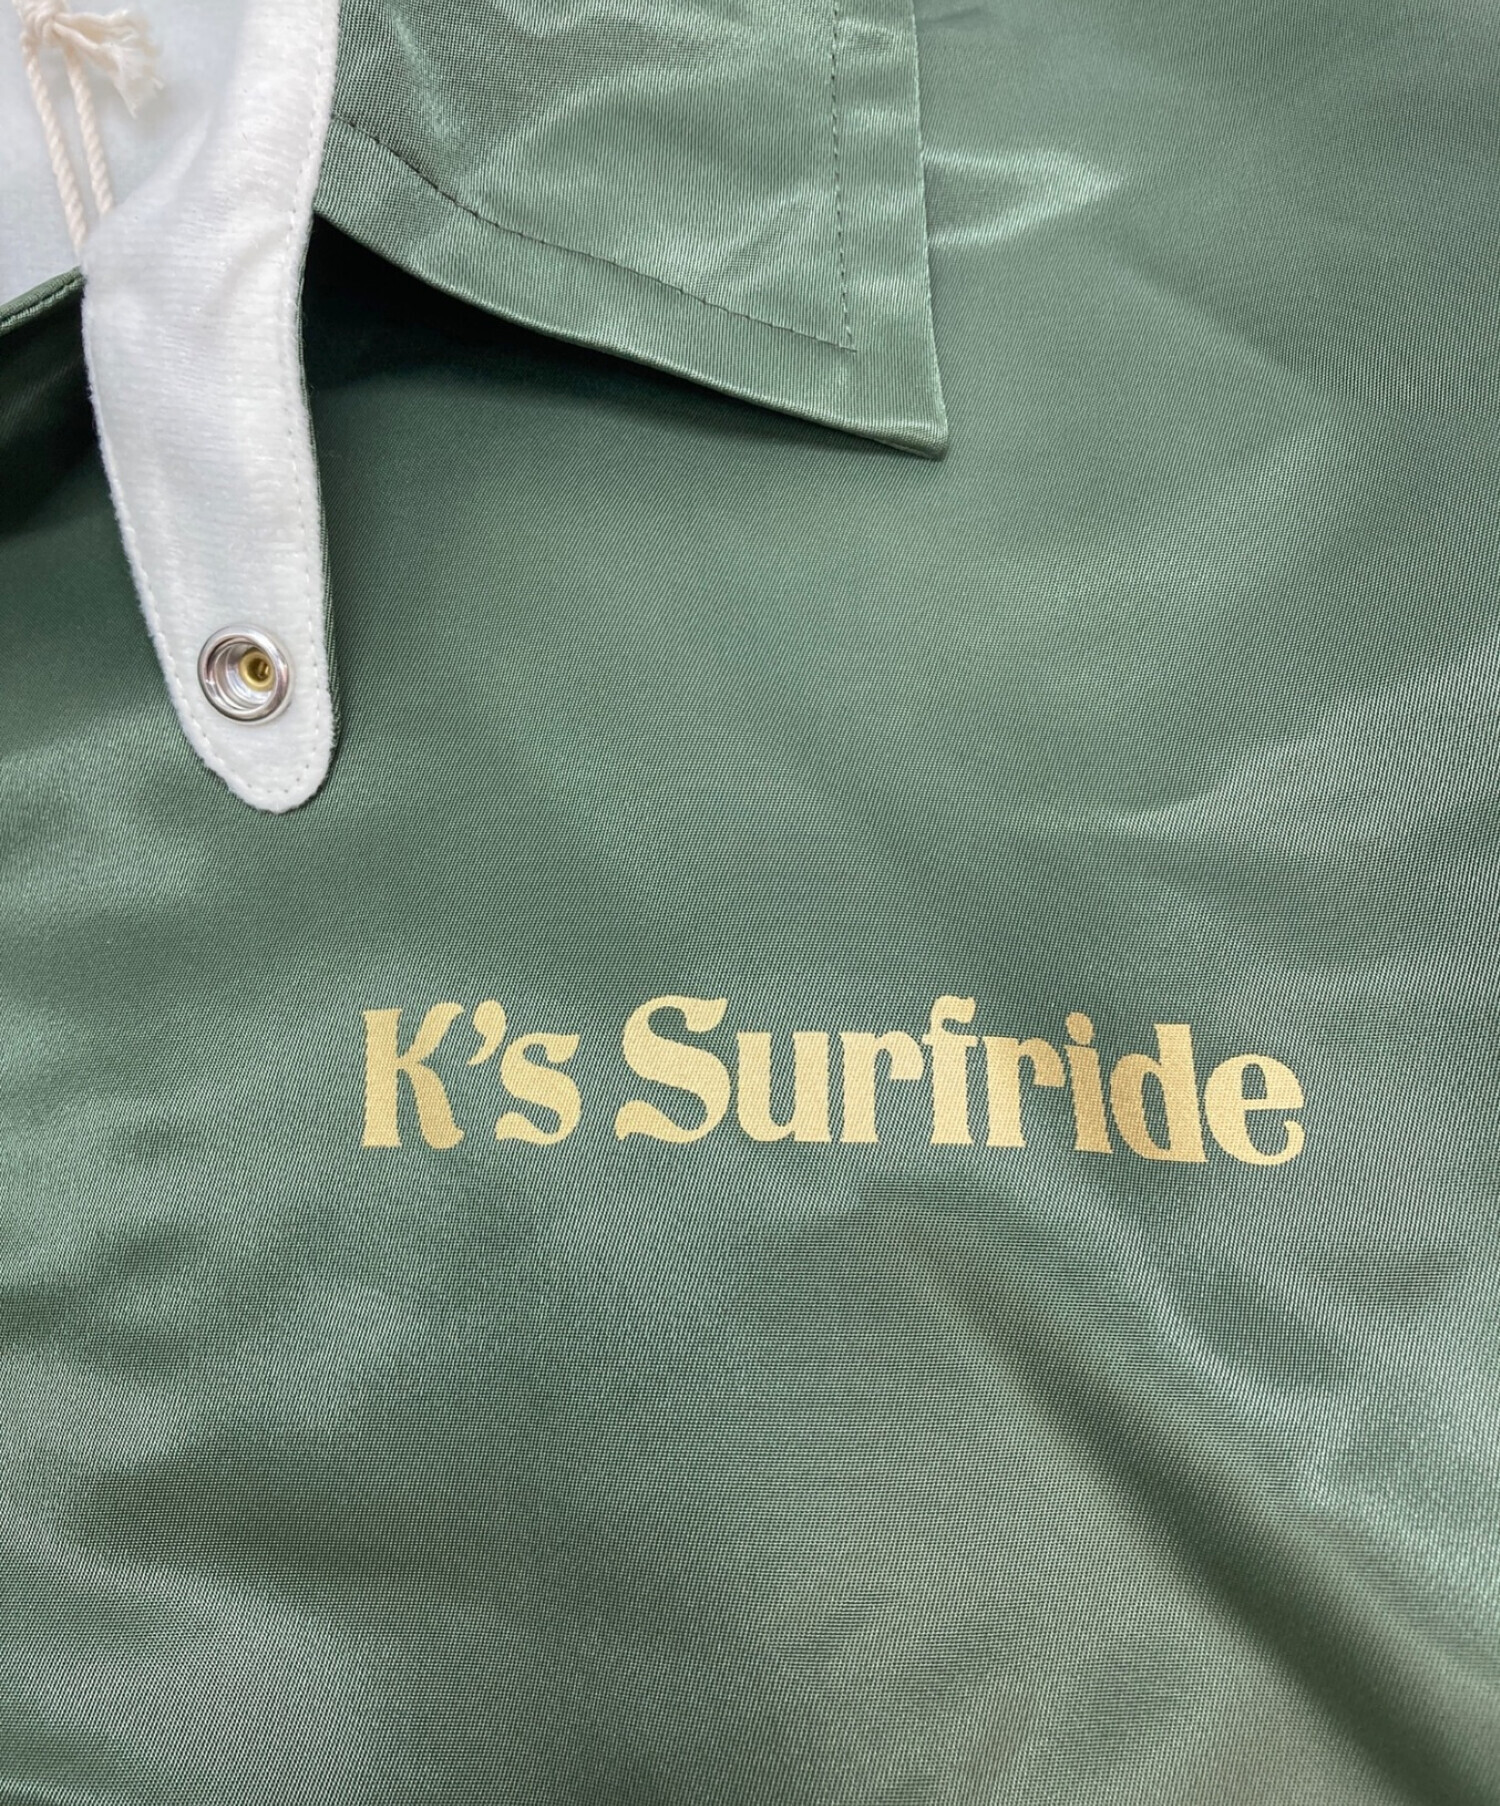 K's surf ride×Subculture コーチジャケットサイズは2ですか